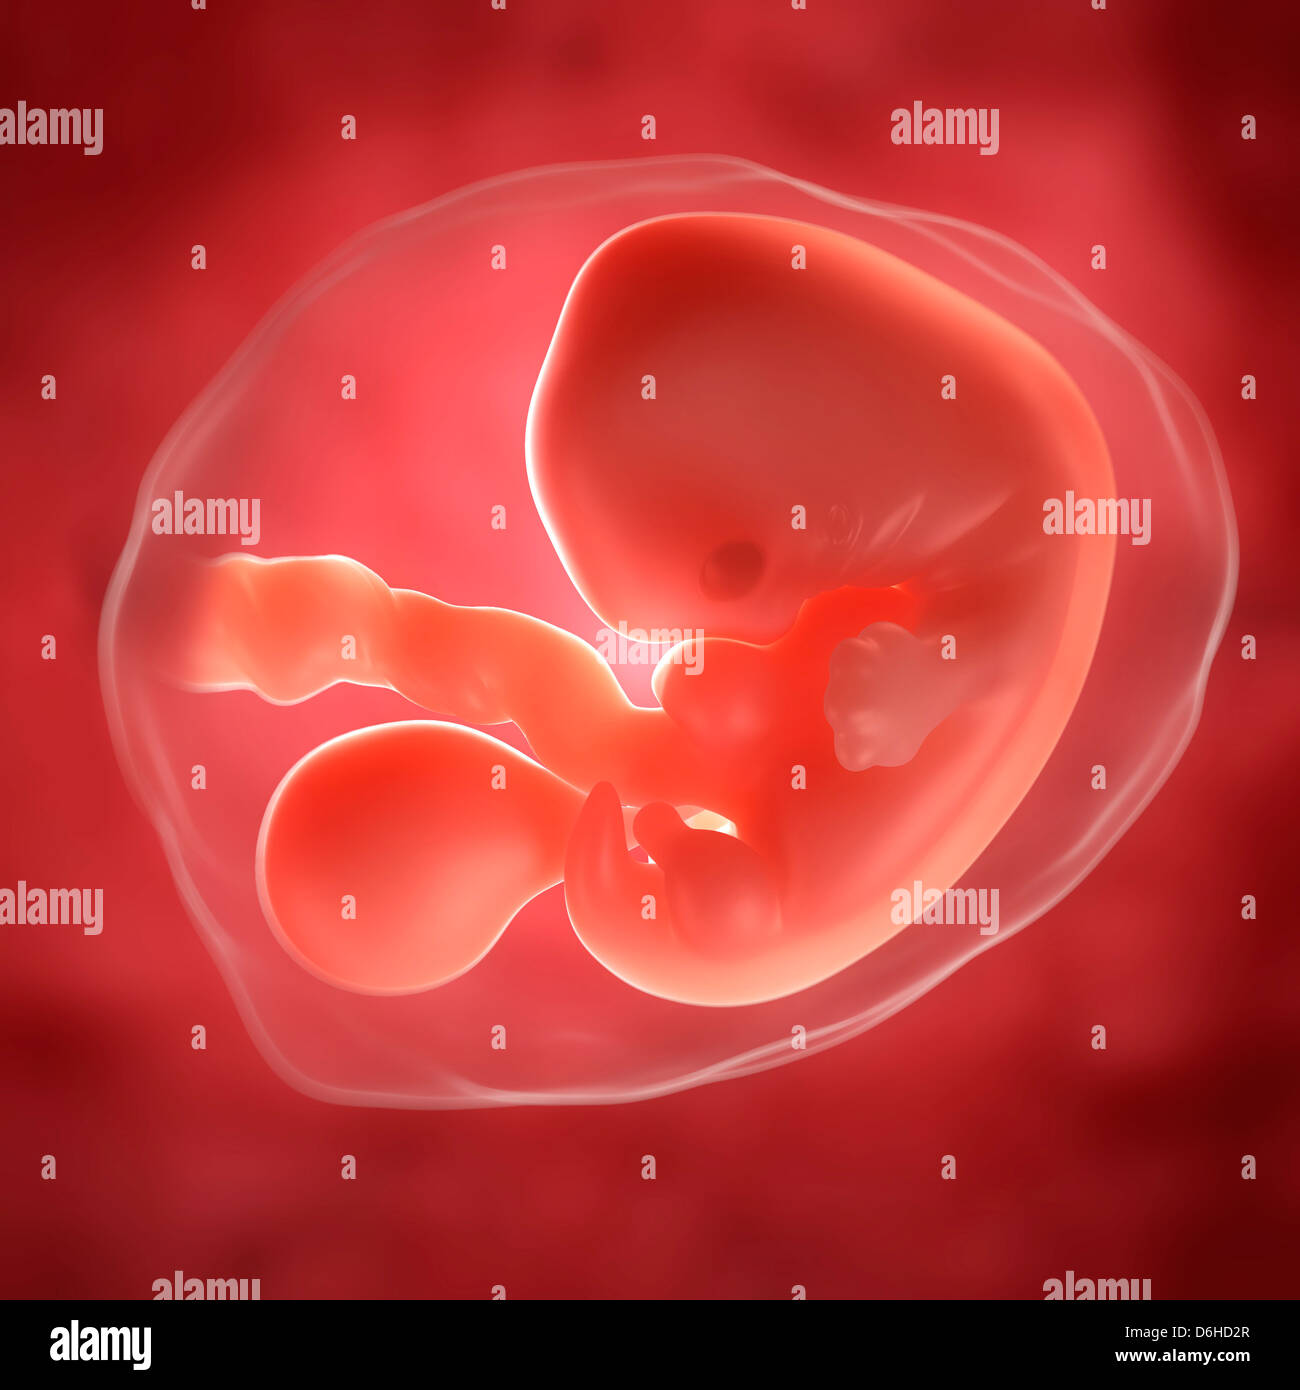 Embryo at 5 weeks, artwork Stock Photo